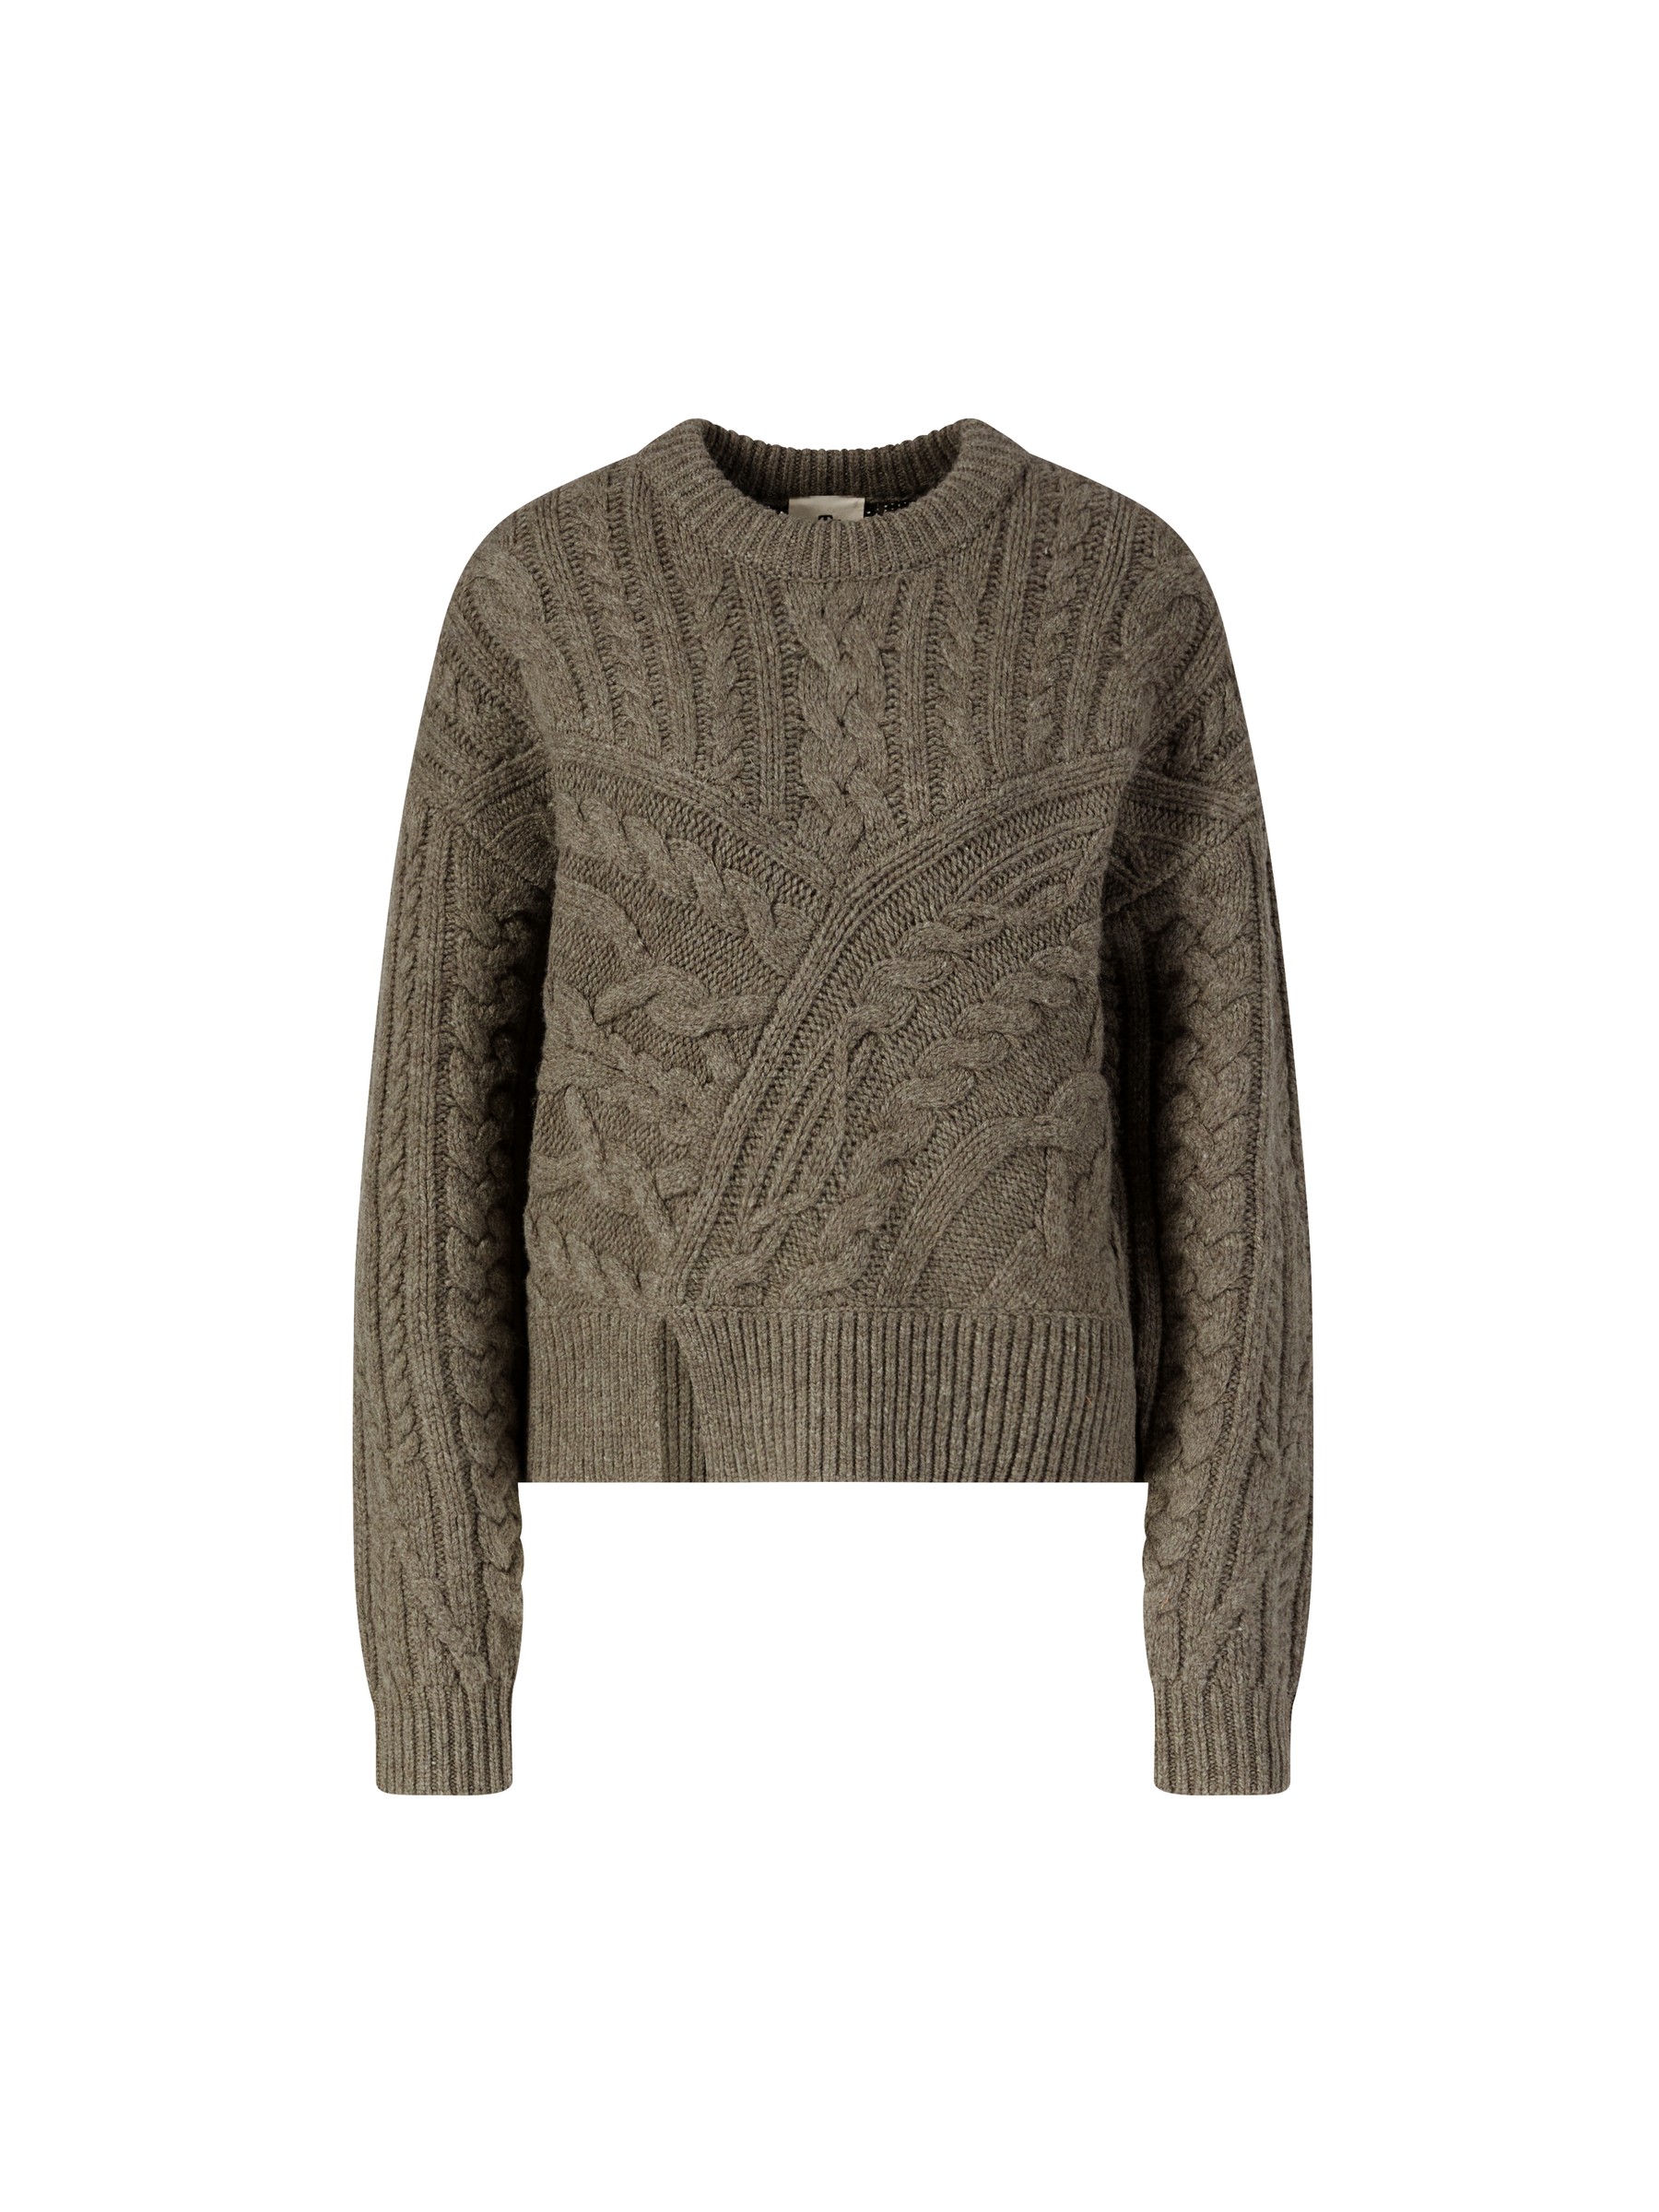 THE GARMENT Wolle Wollpullover canada in Grau Damen Bekleidung Pullover und Strickwaren Sweatjacken 